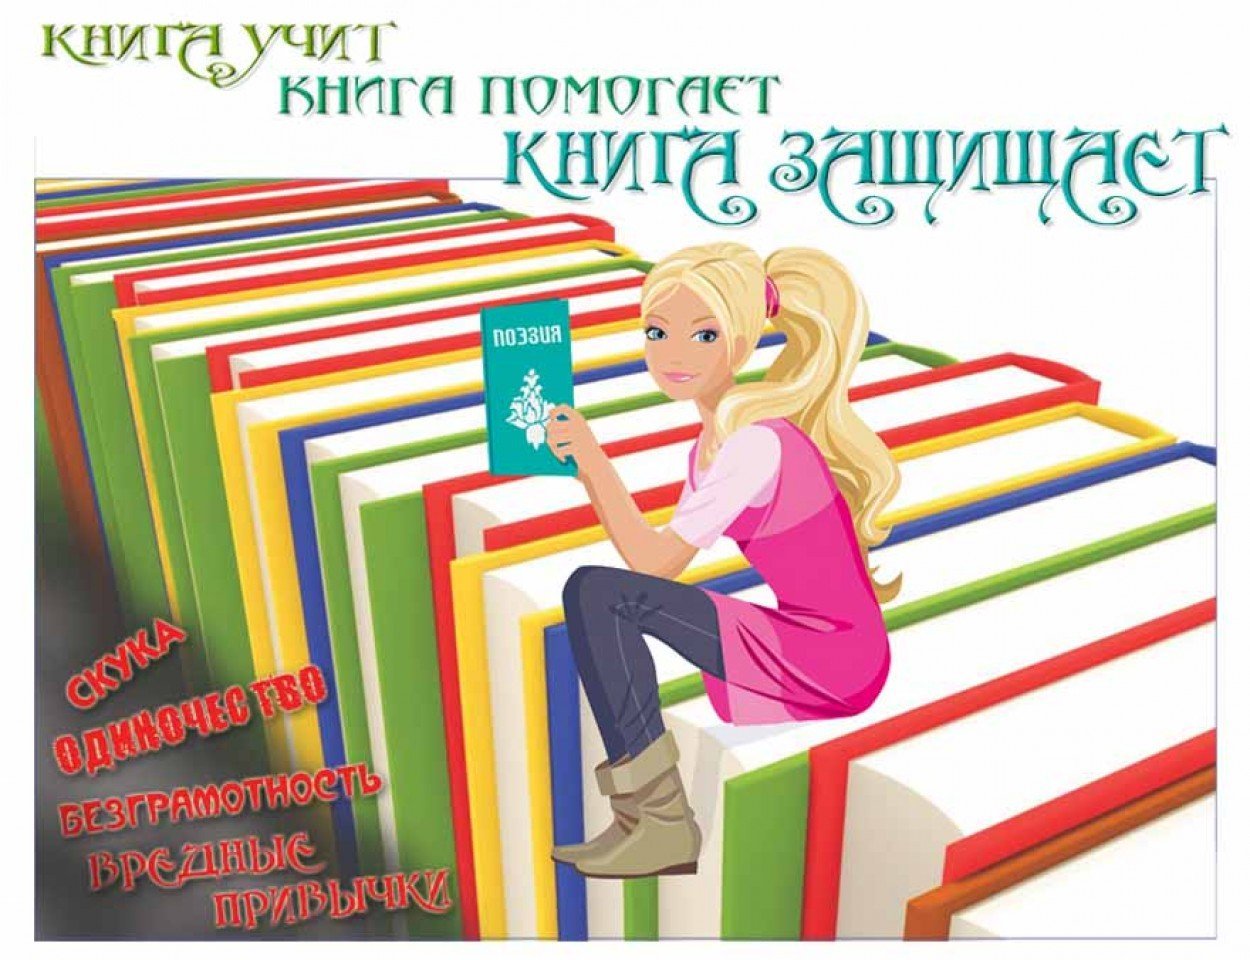 Плакат читаем книги. Реклама книги. Реклама книг в библиотеке. Школьная библиотека. Чтение книг.